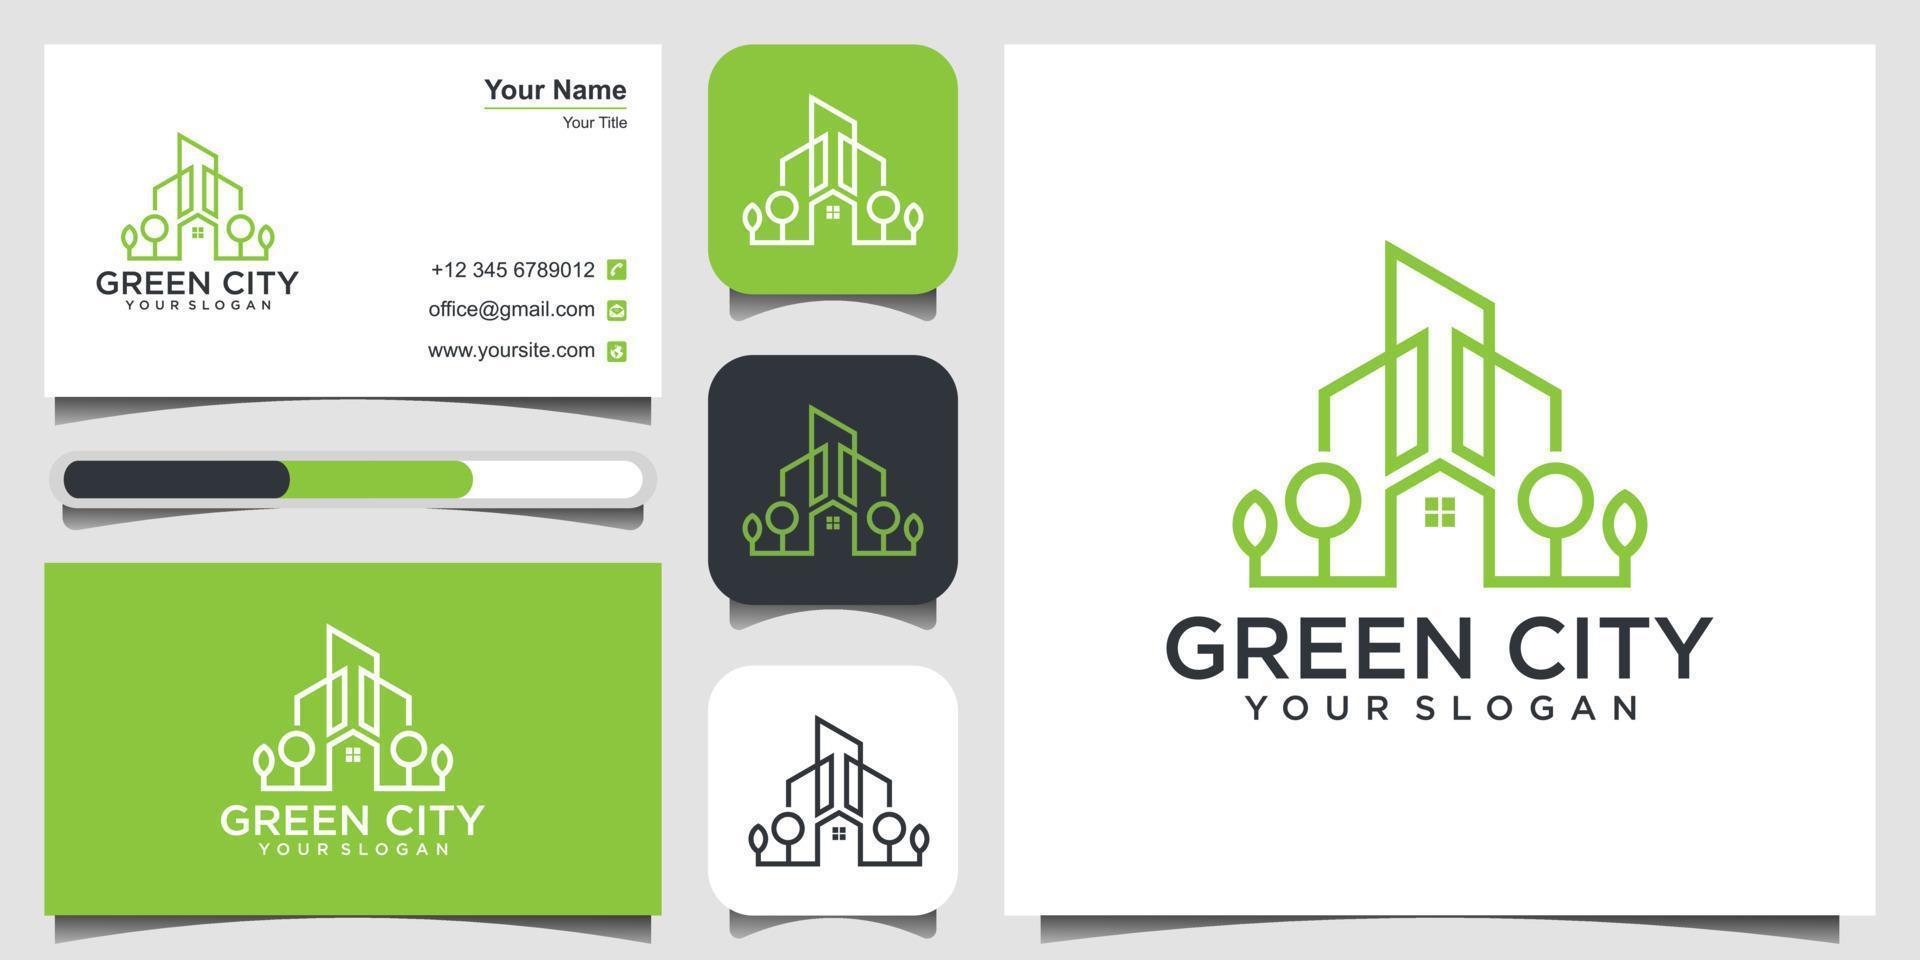 grüne Stadt Immobilien Logo Design Vektor Vorlage Gebäude. minimalistisches Gliederungssymbol für umweltfreundliche Gebäude. Icon und Visitenkarte Premium-Vektor.